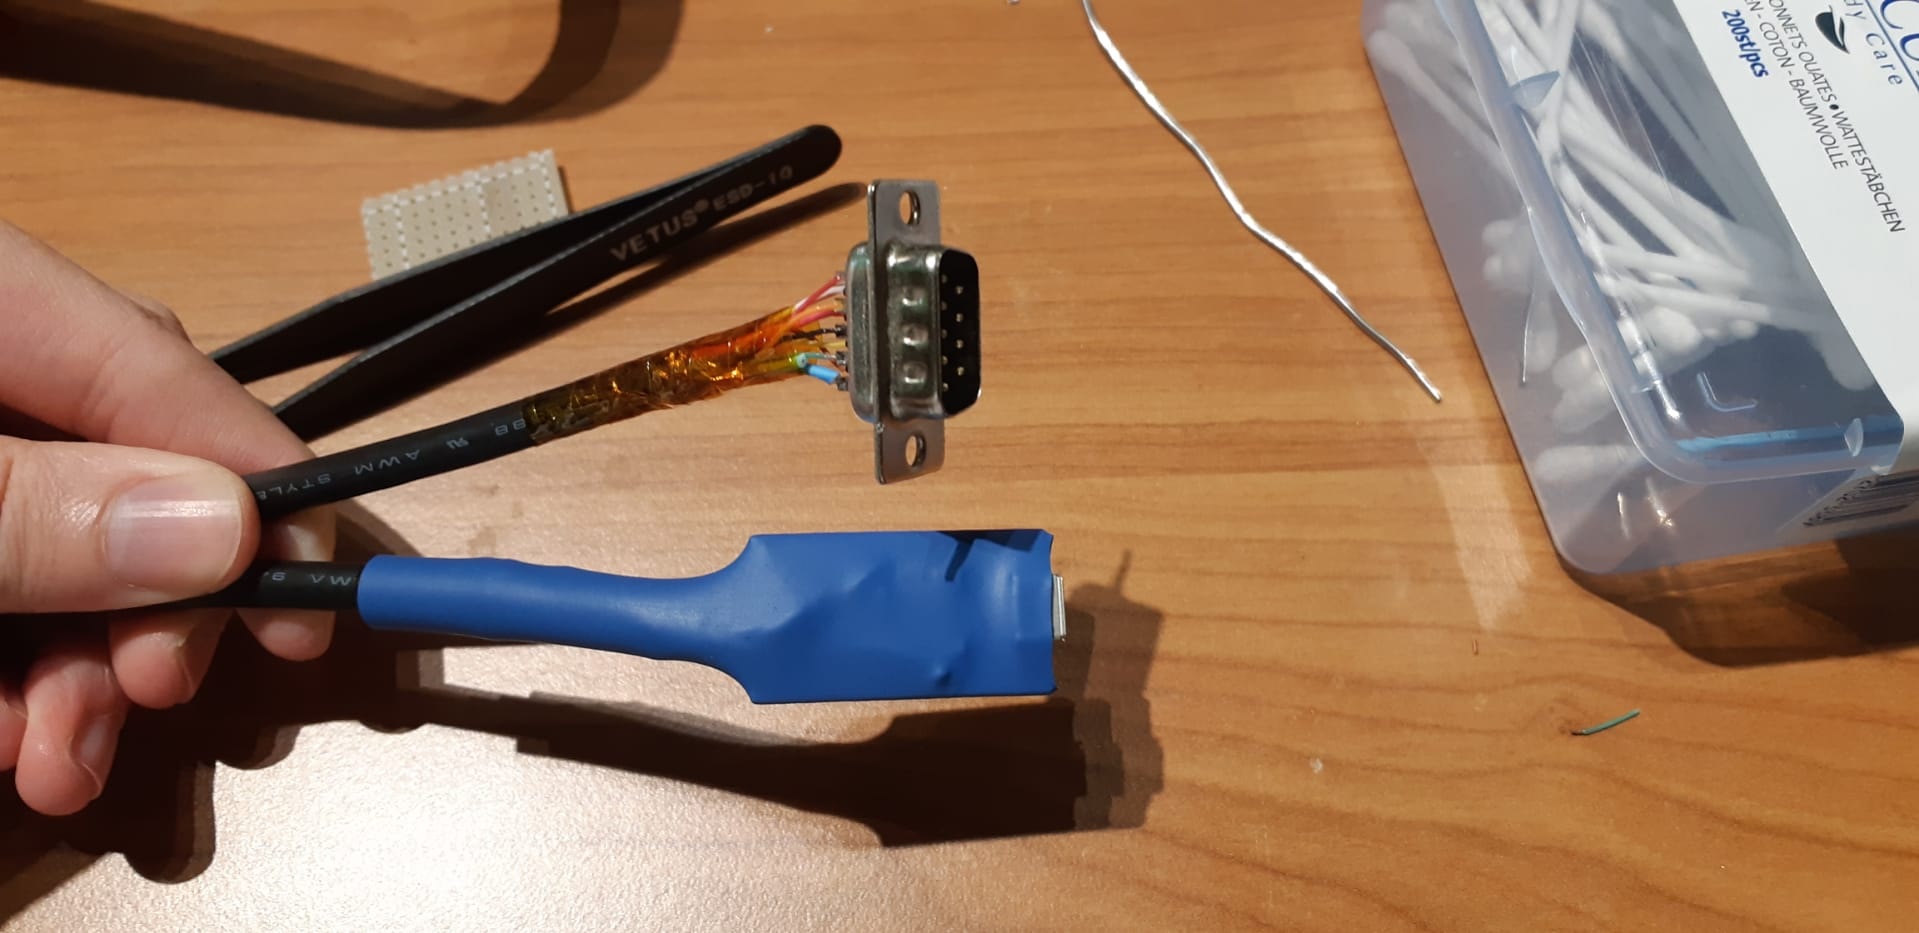 arduino pro micro plug